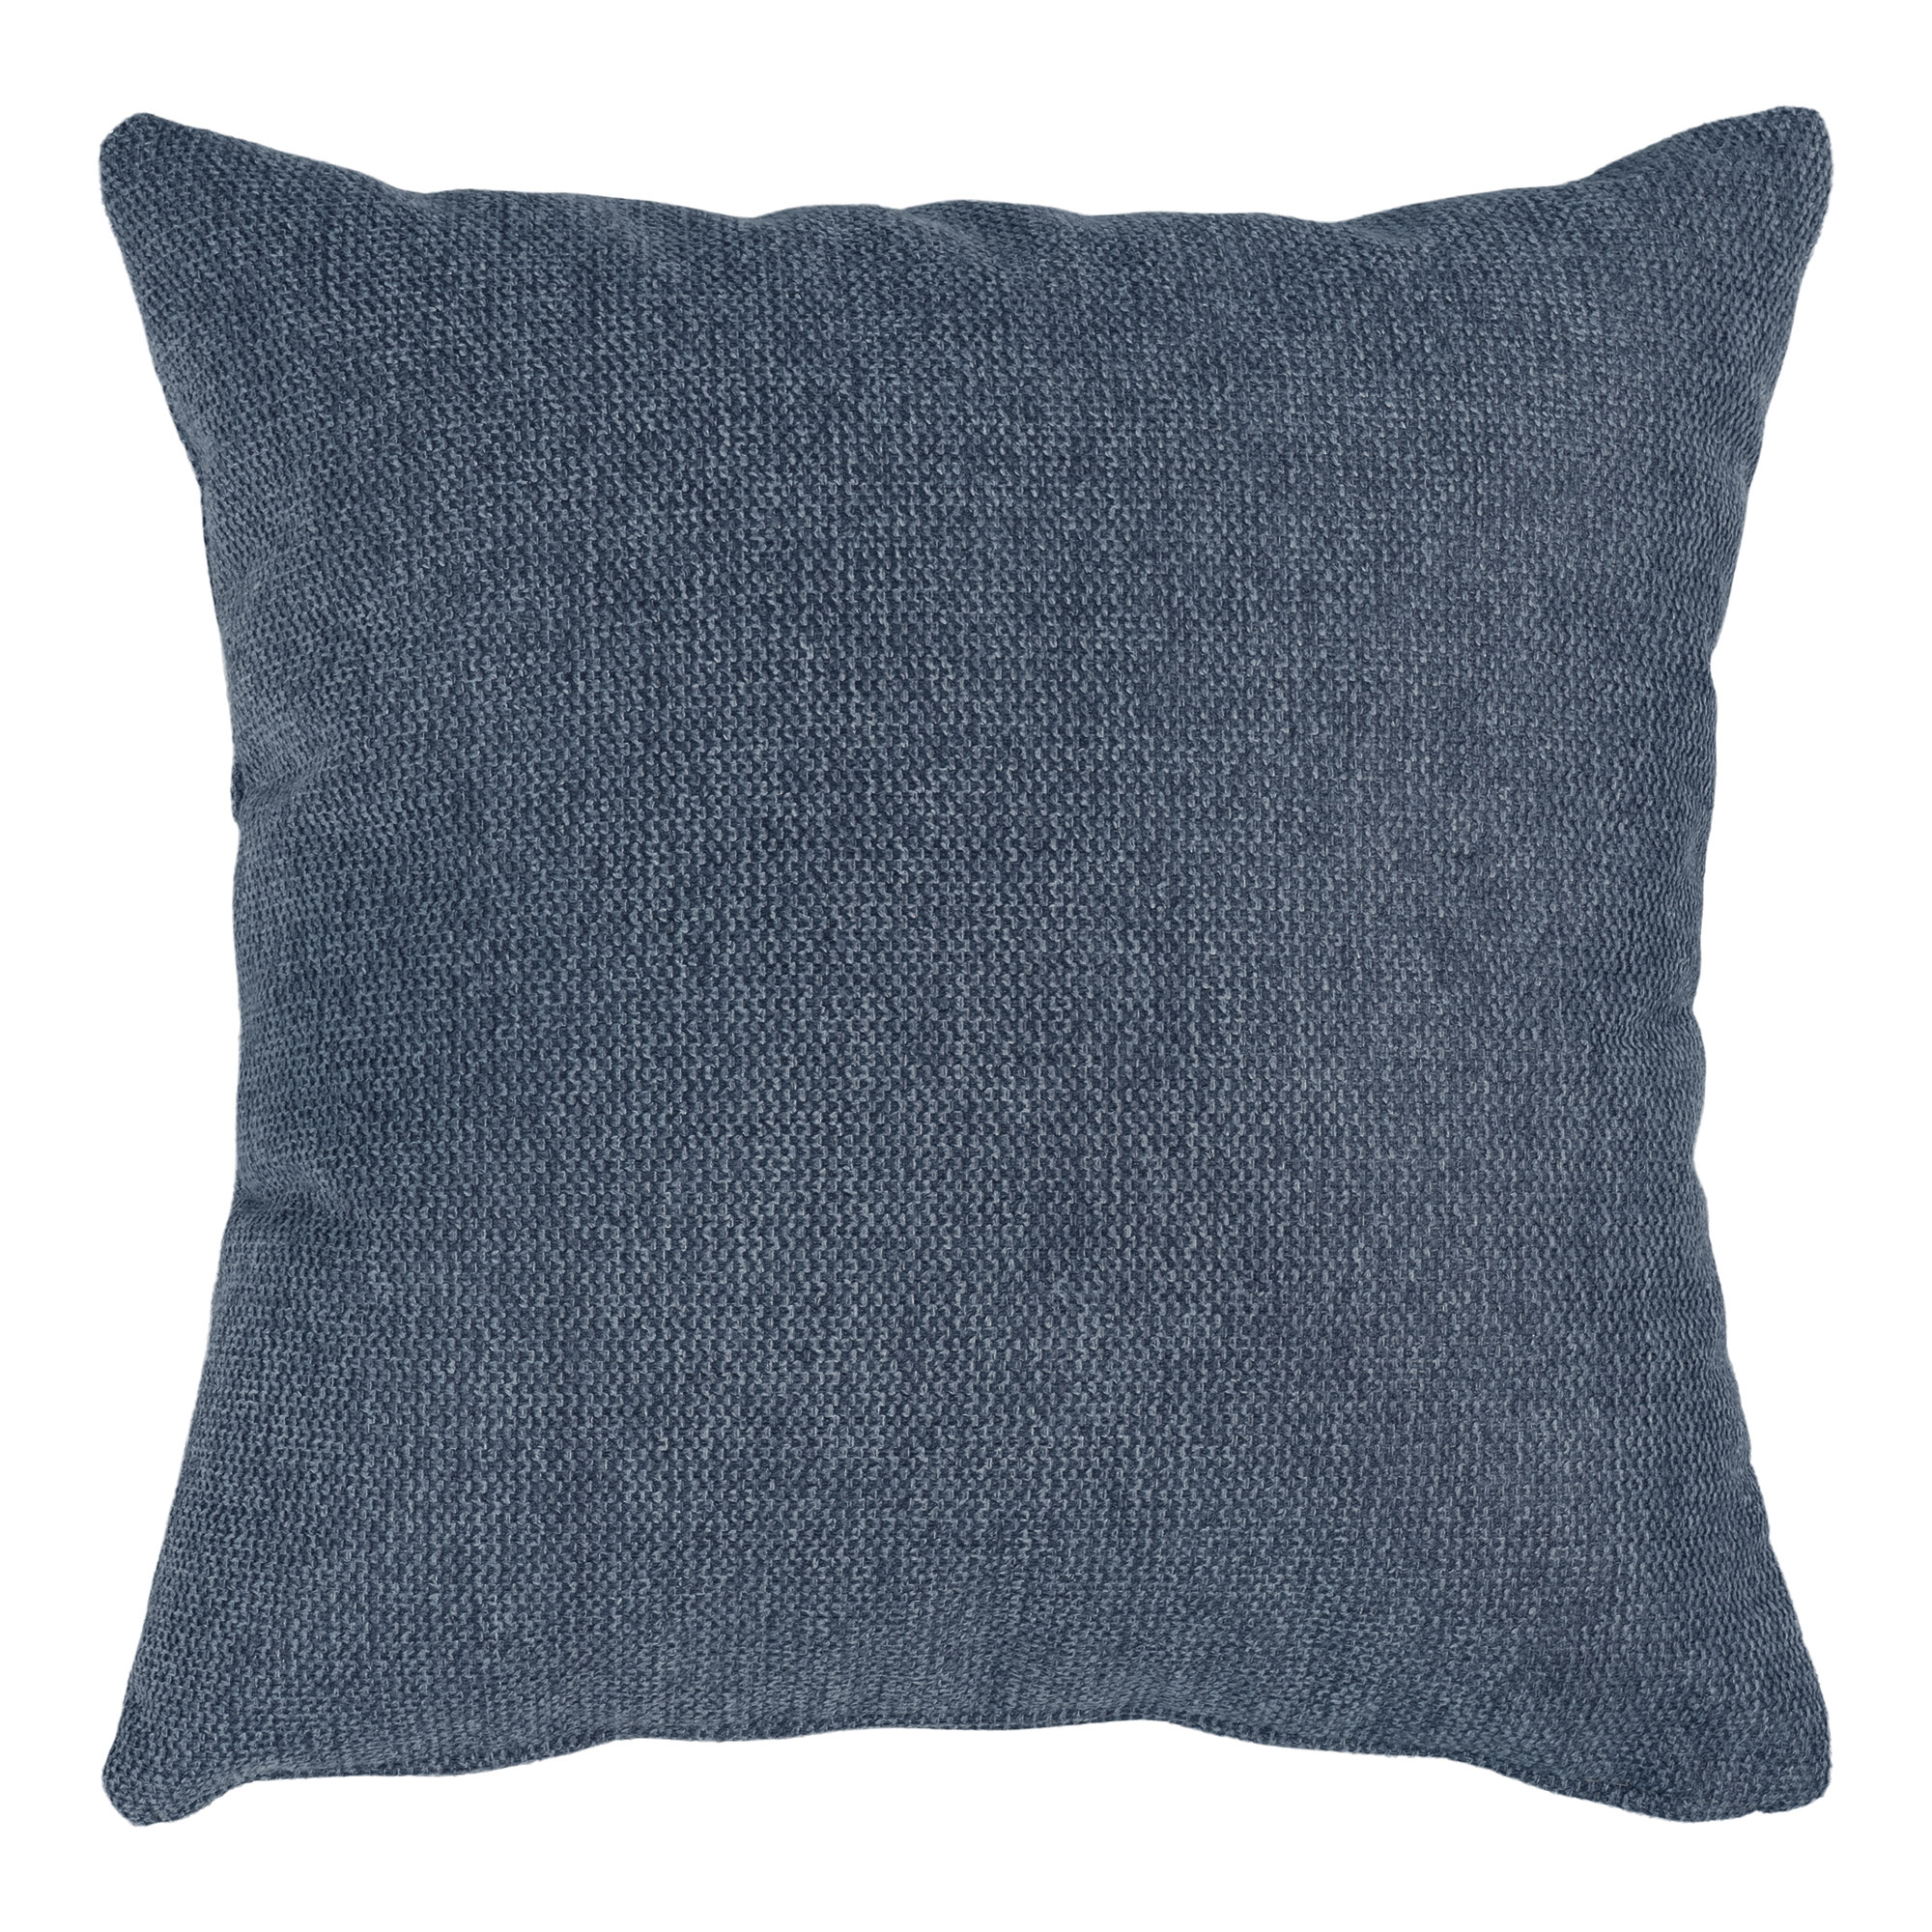 15: HOUSE NORDIC Lido pude, kvadratisk - mørkeblå polyester stof (40x40)